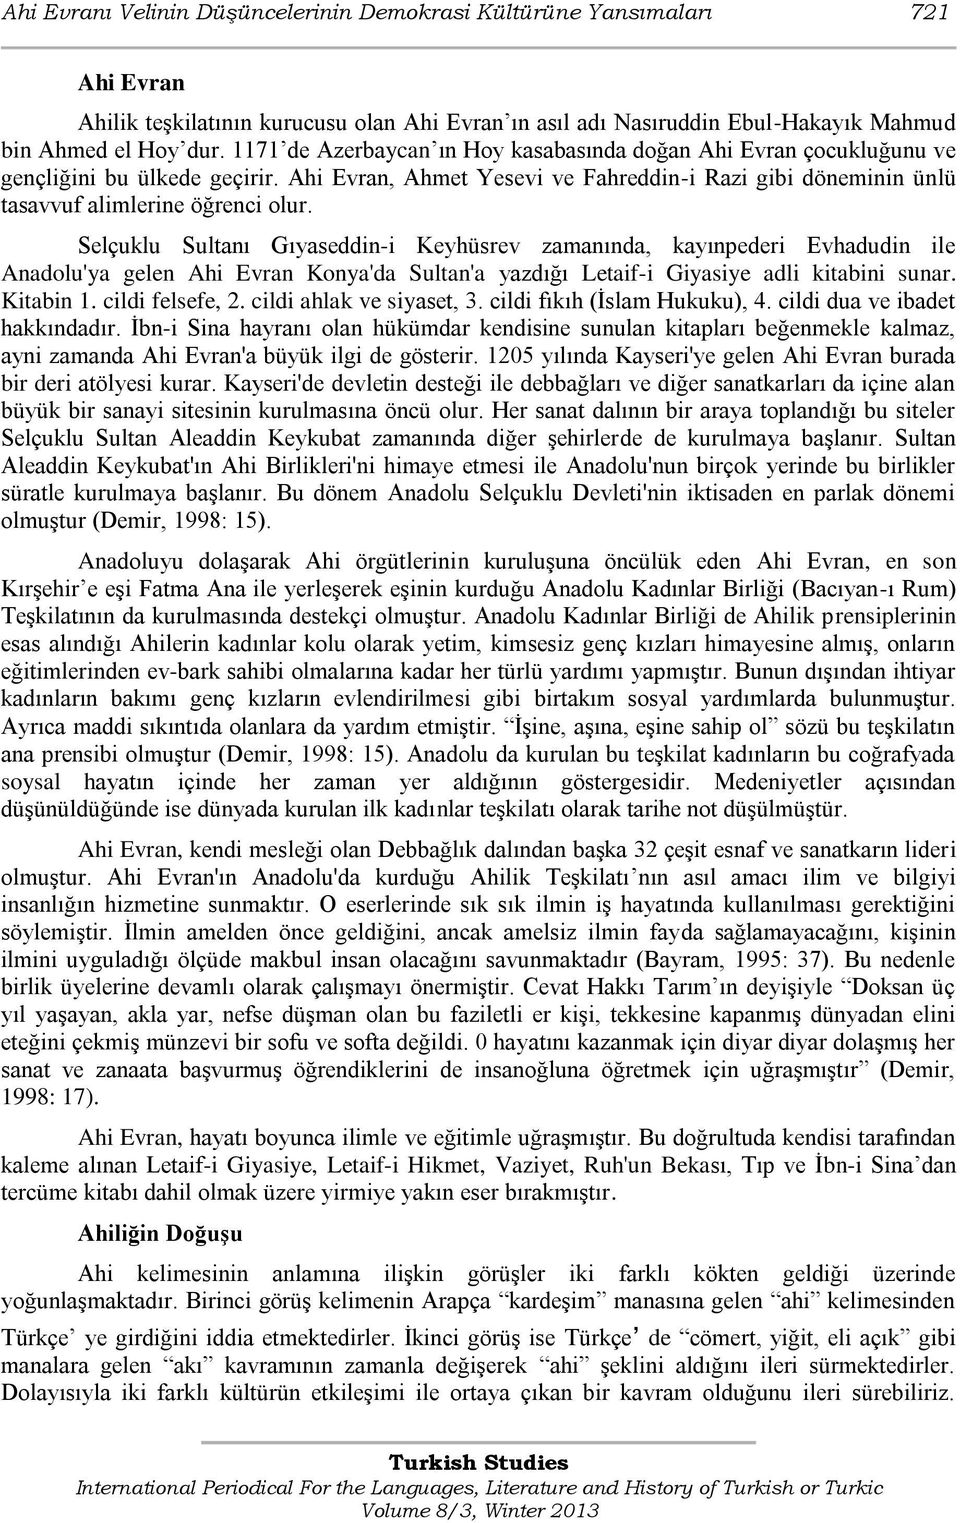 Selçuklu Sultanı Gıyaseddin-i Keyhüsrev zamanında, kayınpederi Evhadudin ile Anadolu'ya gelen Ahi Evran Konya'da Sultan'a yazdığı Letaif-i Giyasiye adli kitabini sunar. Kitabin 1. cildi felsefe, 2.